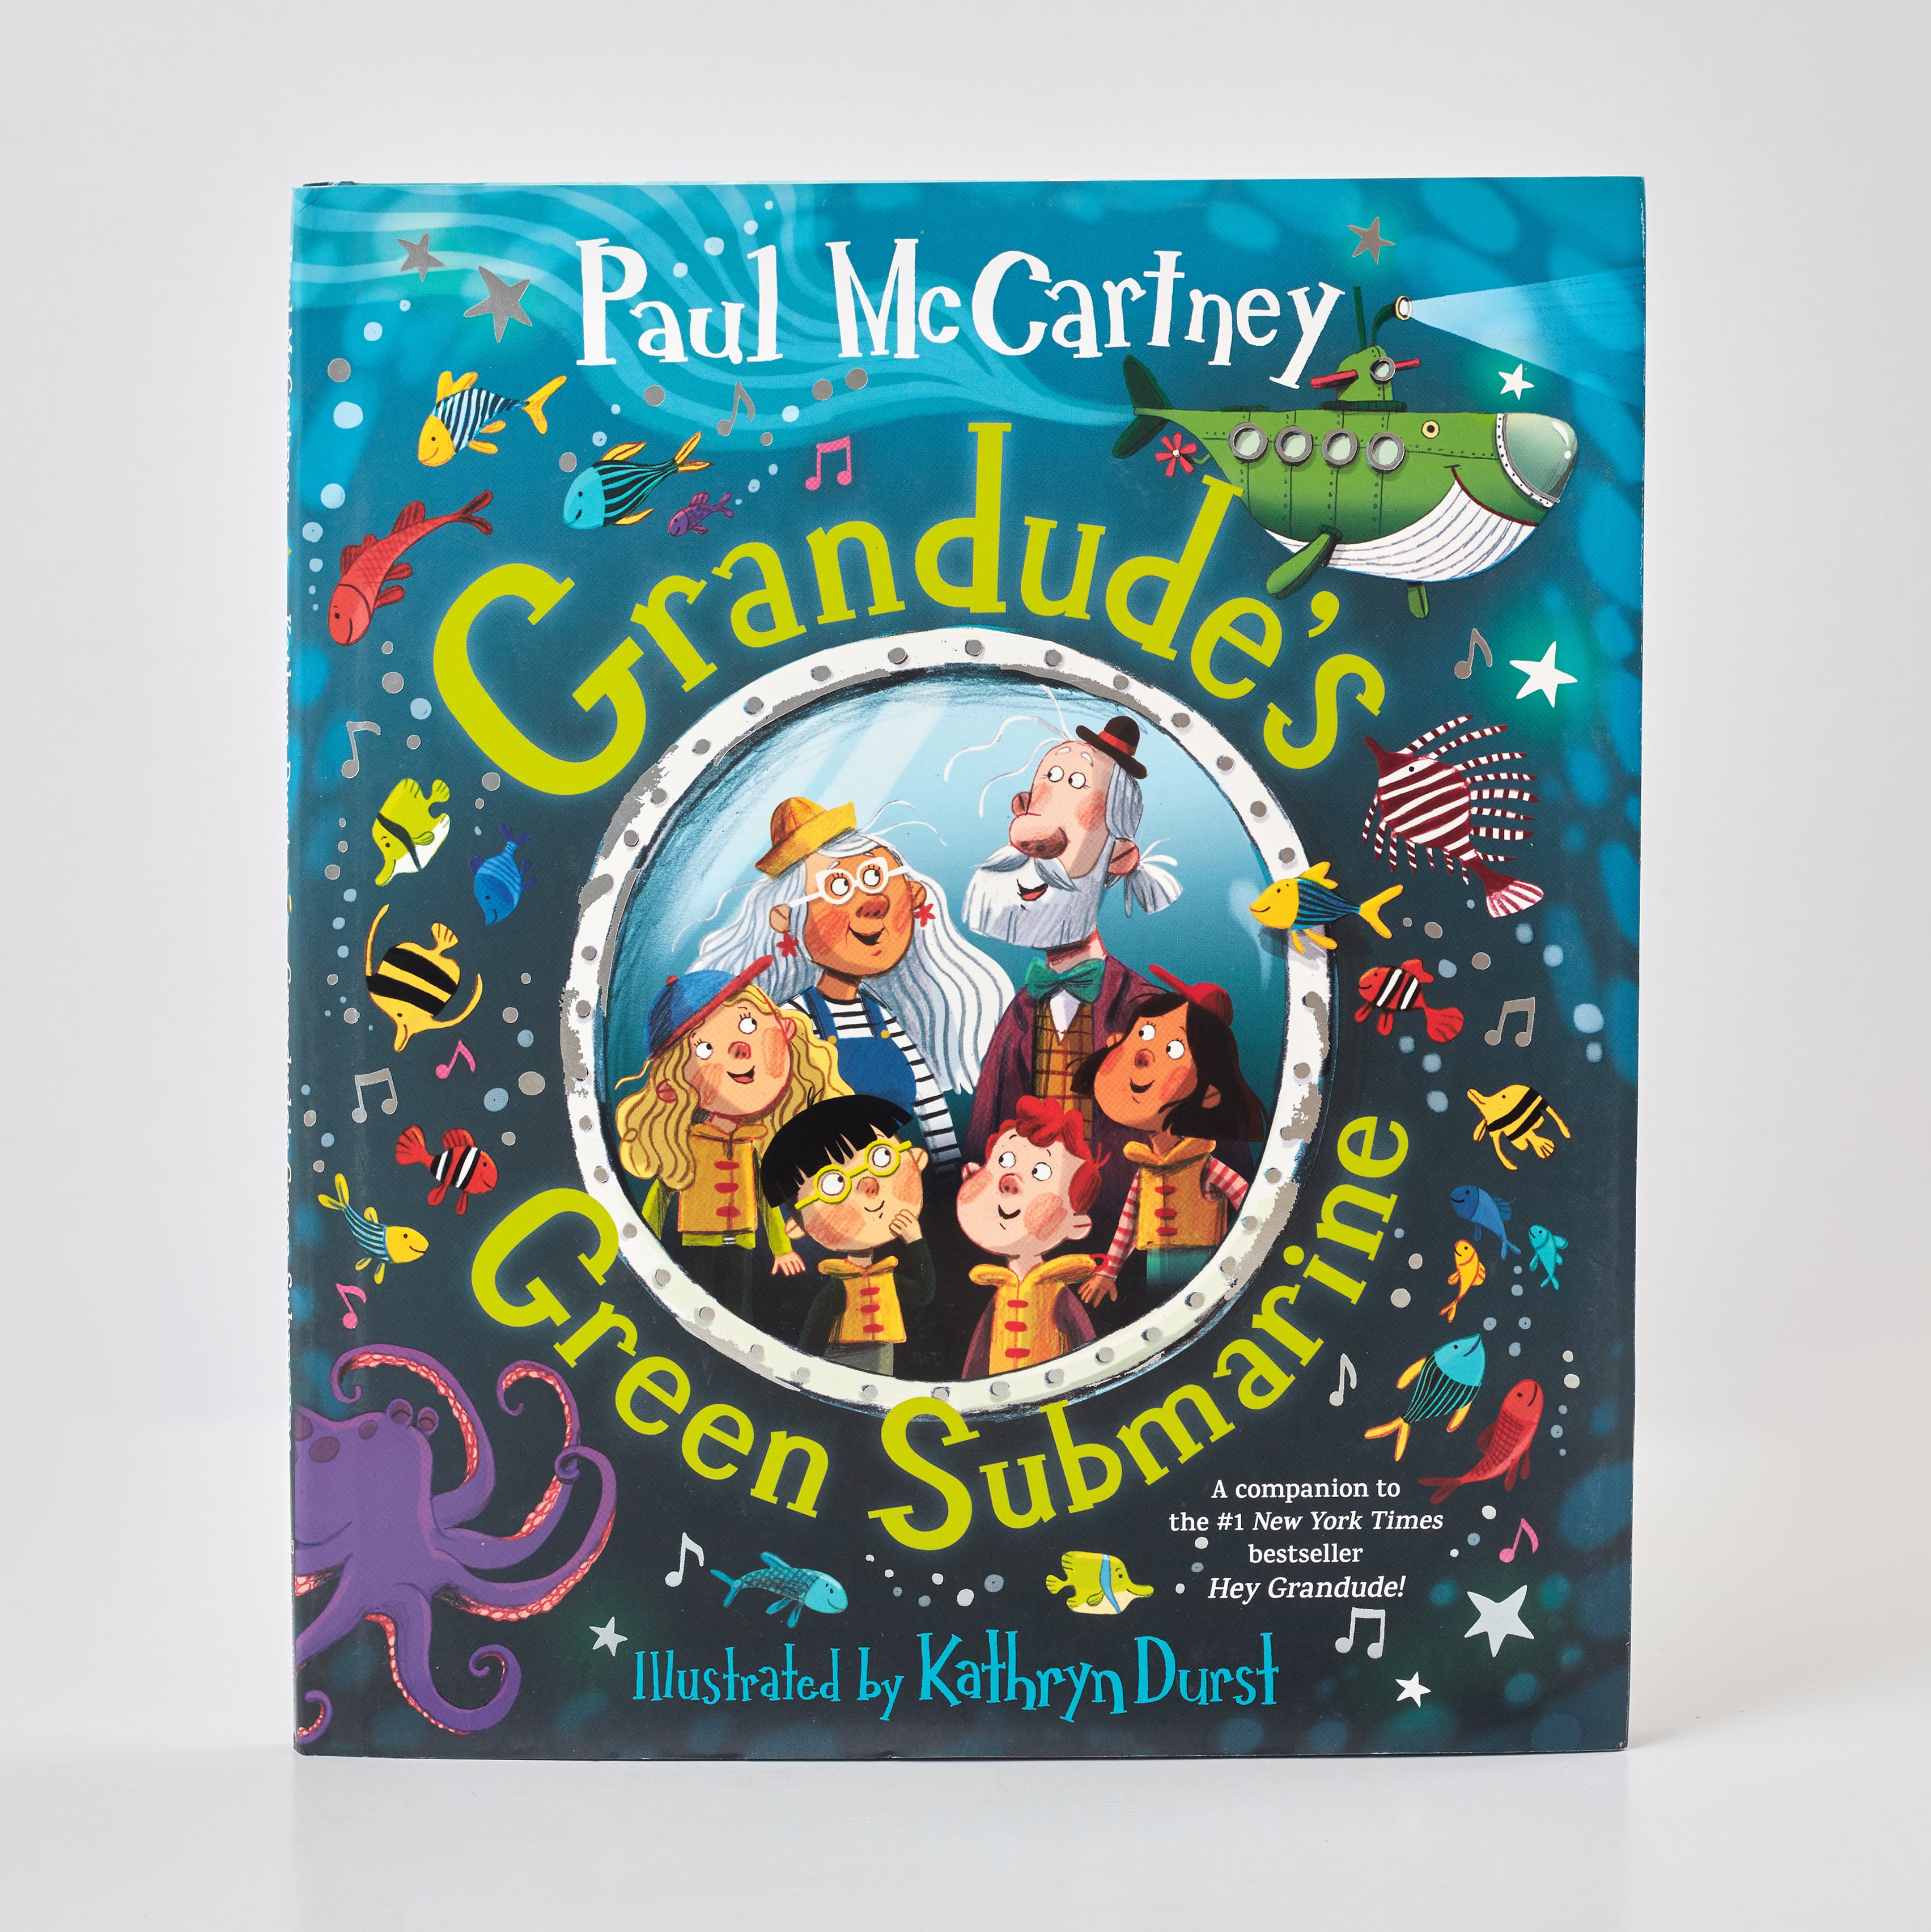 Image of Grandude's Green Submarine by Paul McCartney